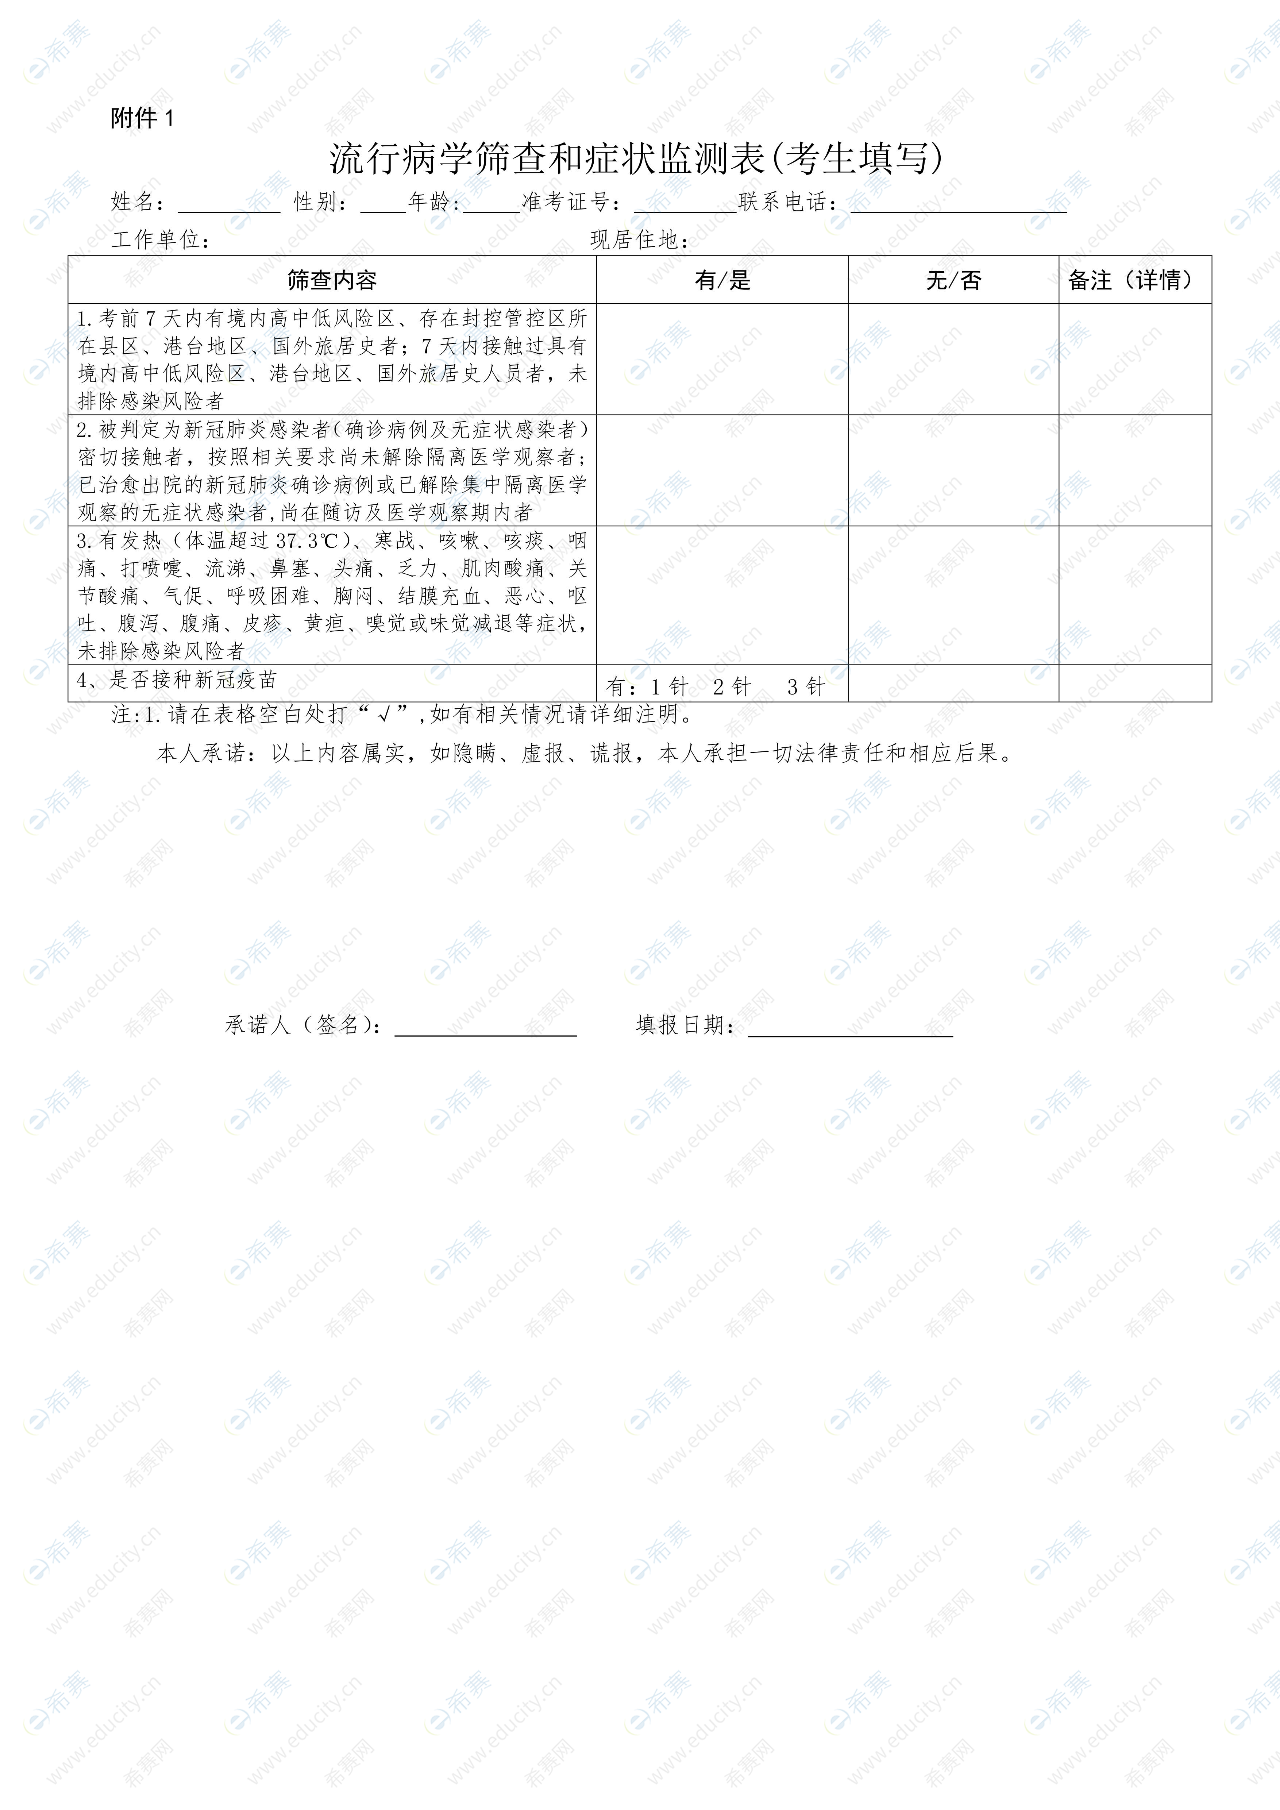 河南新乡护考监测表下载.png